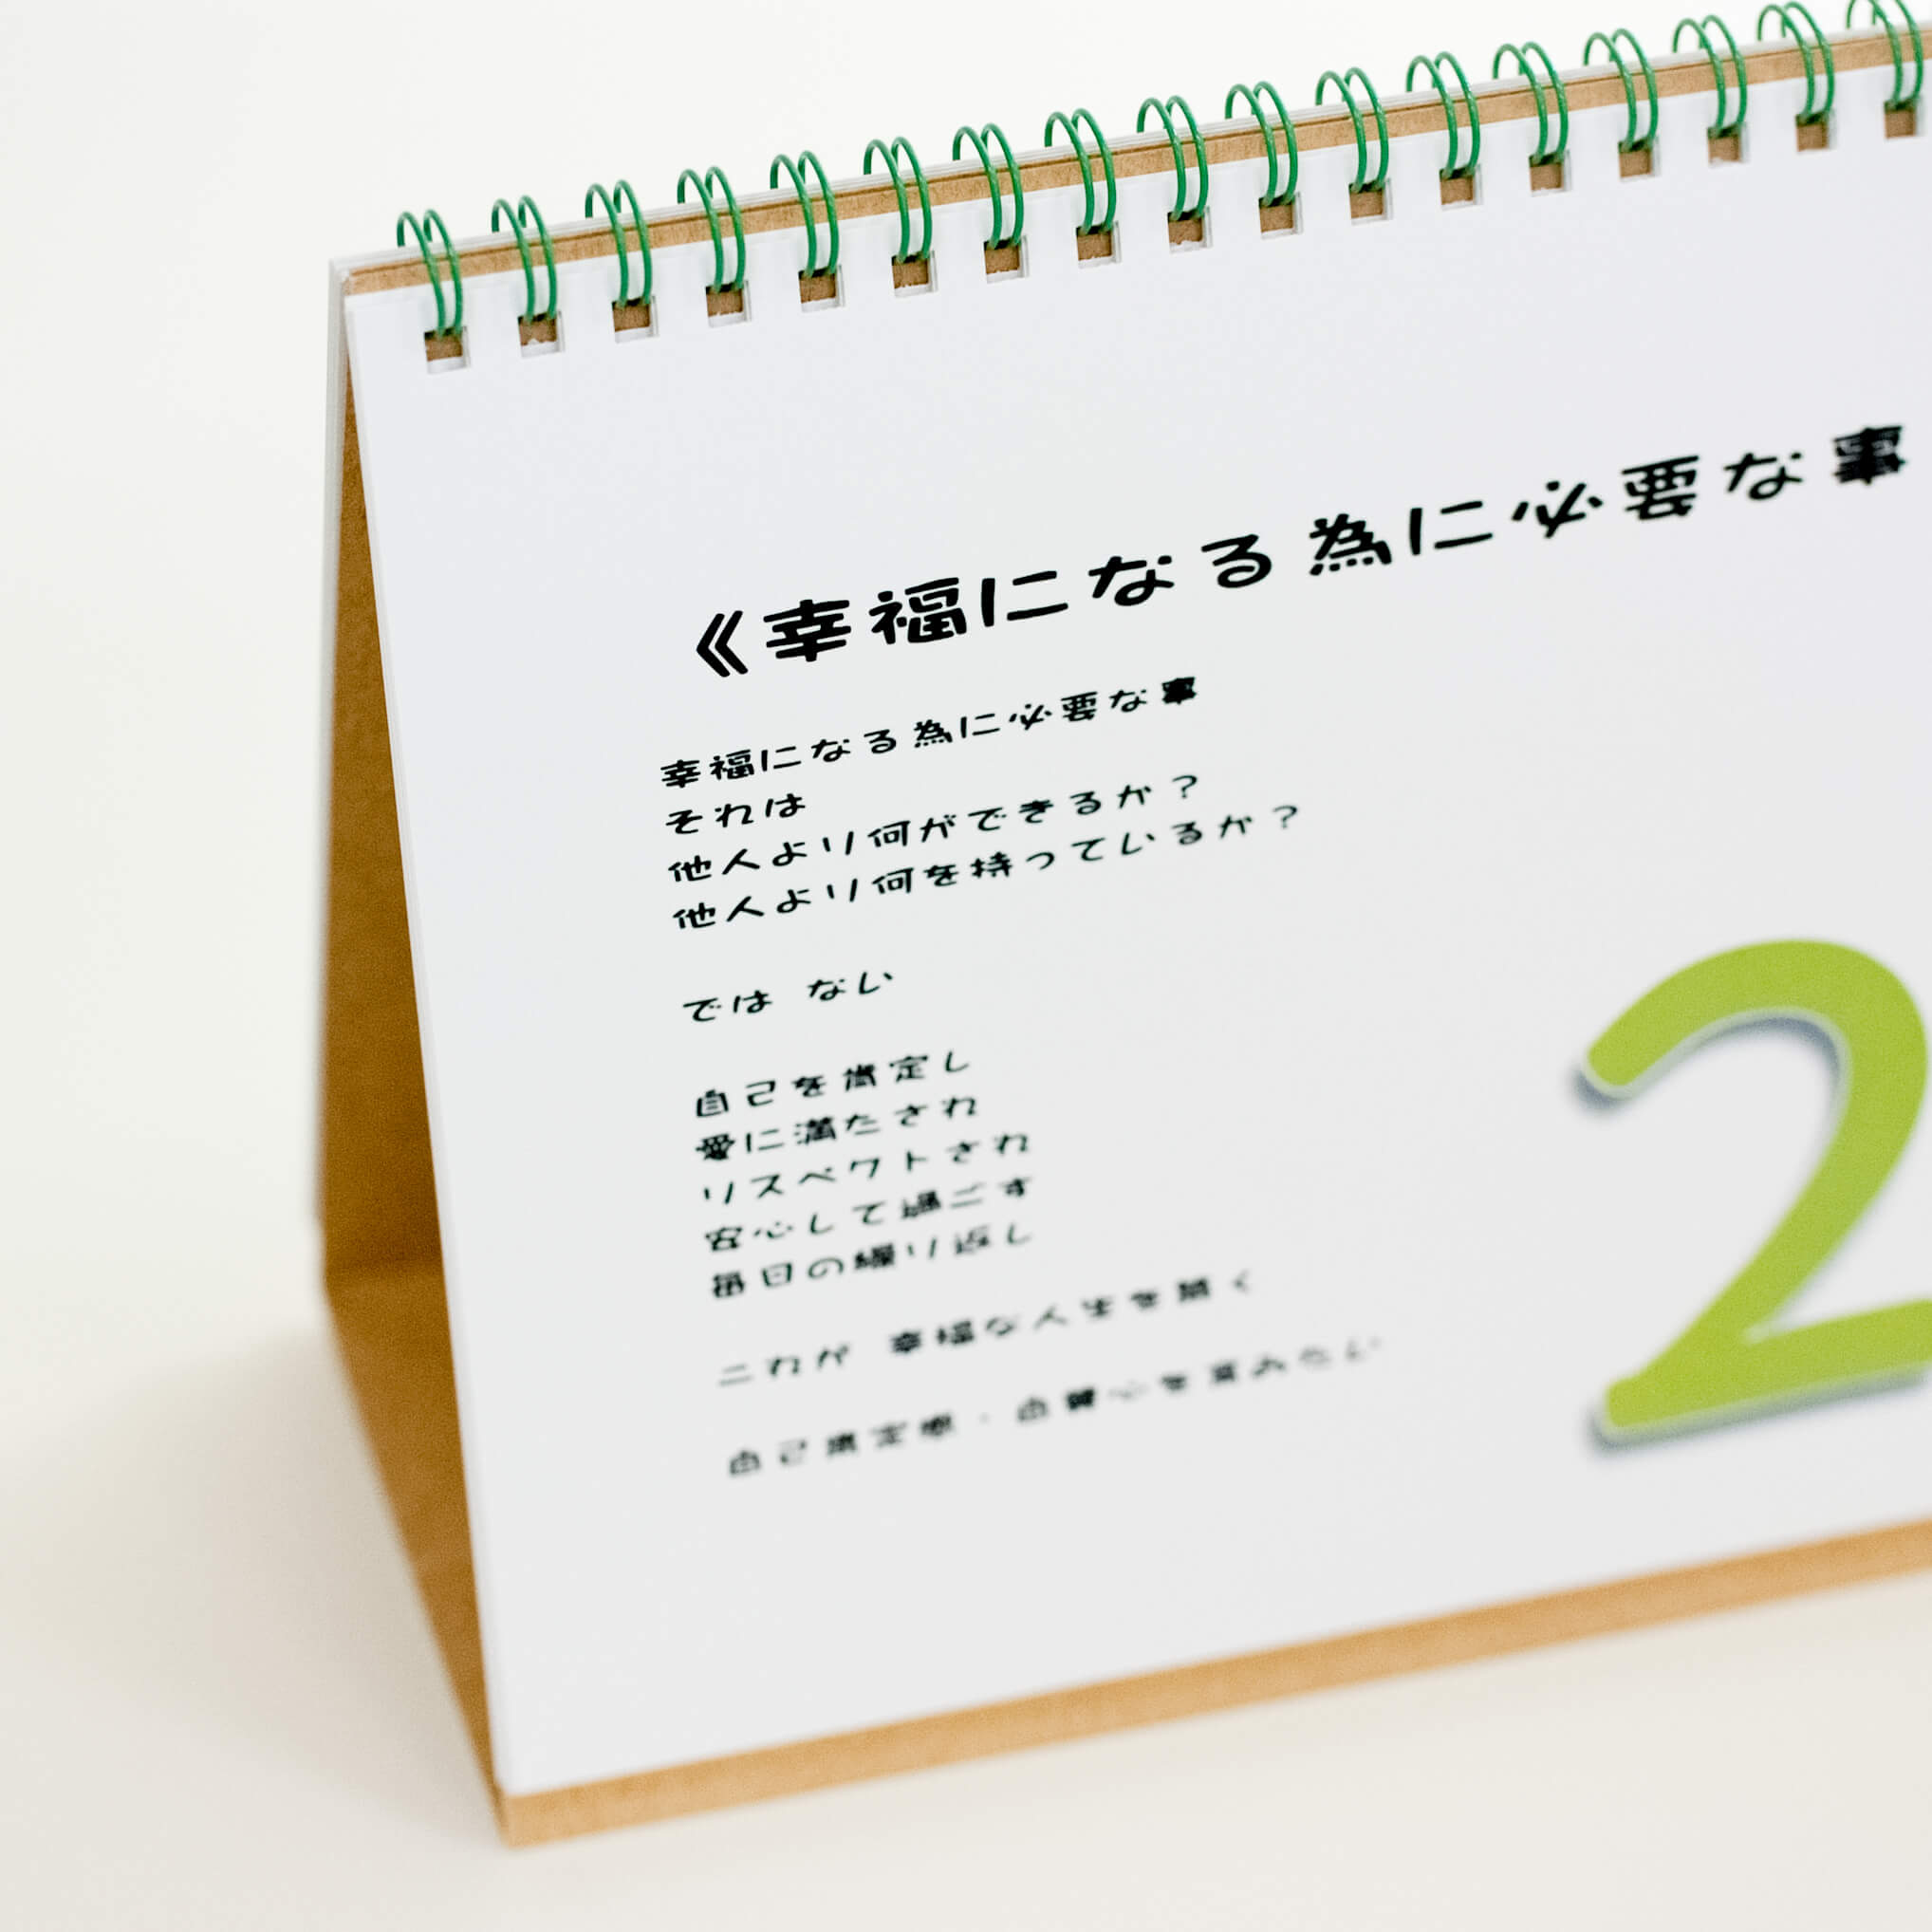 「浅間 様」製作のオリジナルカレンダー ギャラリー写真2